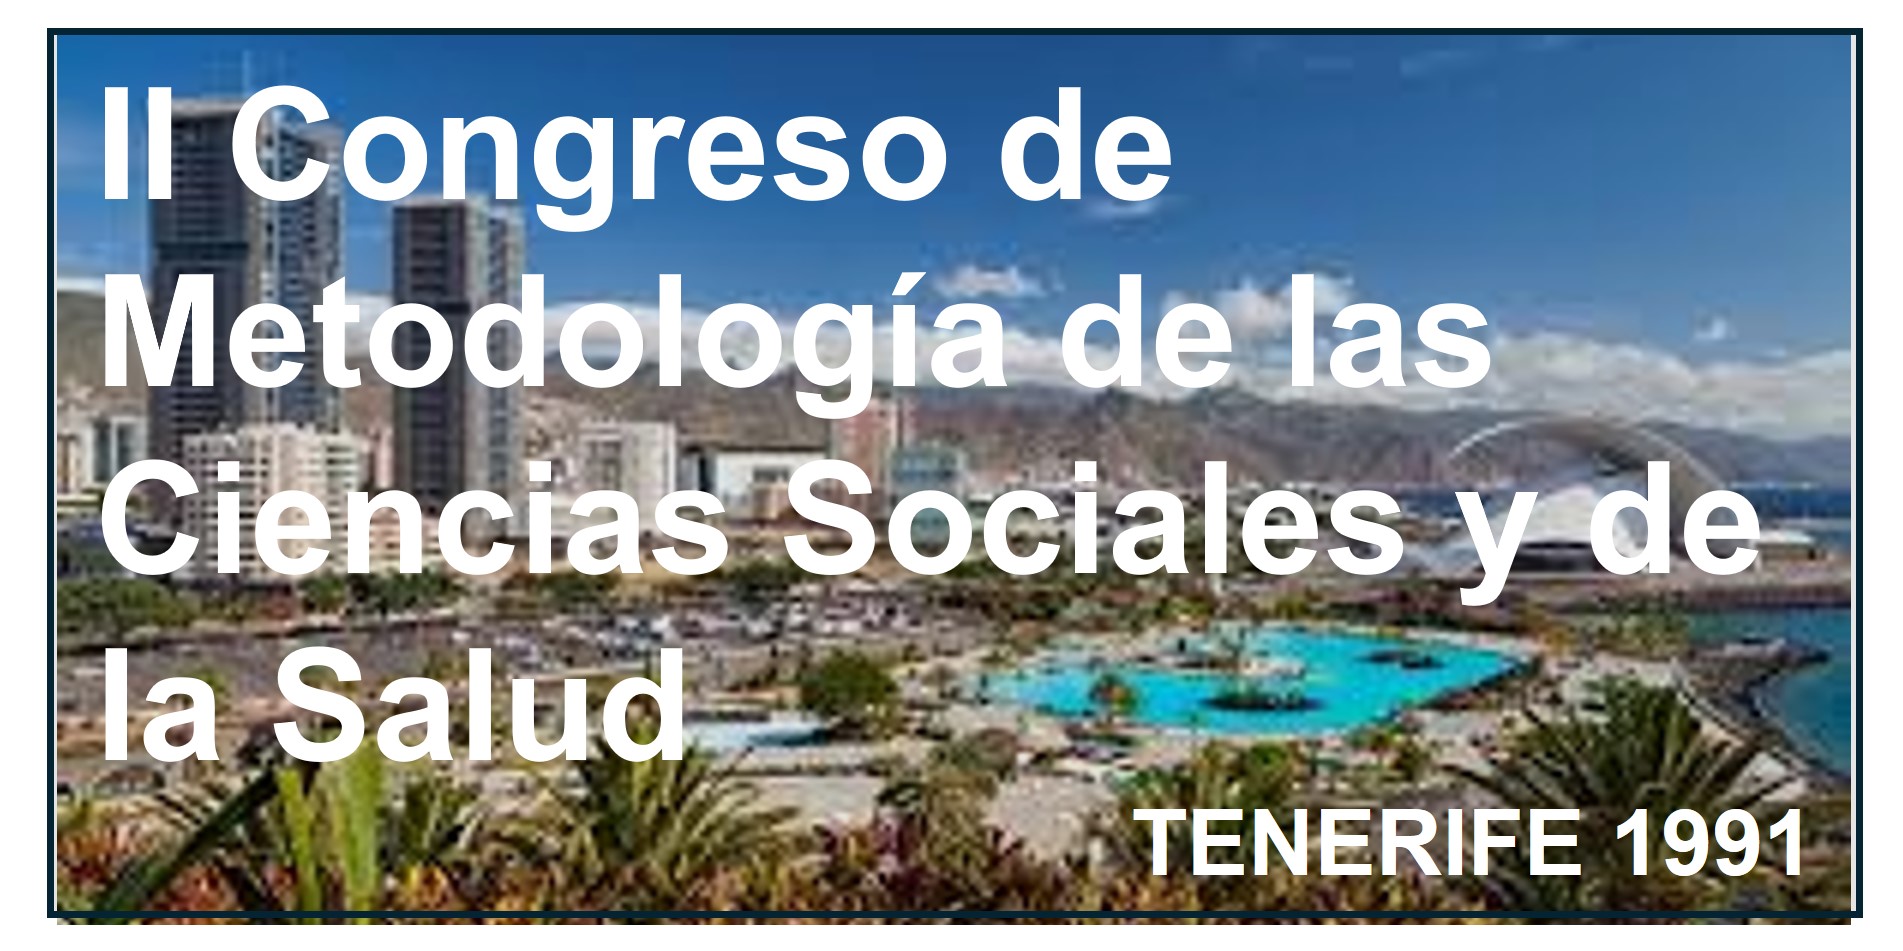    II Congreso de Metodología de las Ciencias Sociales y de la Salud